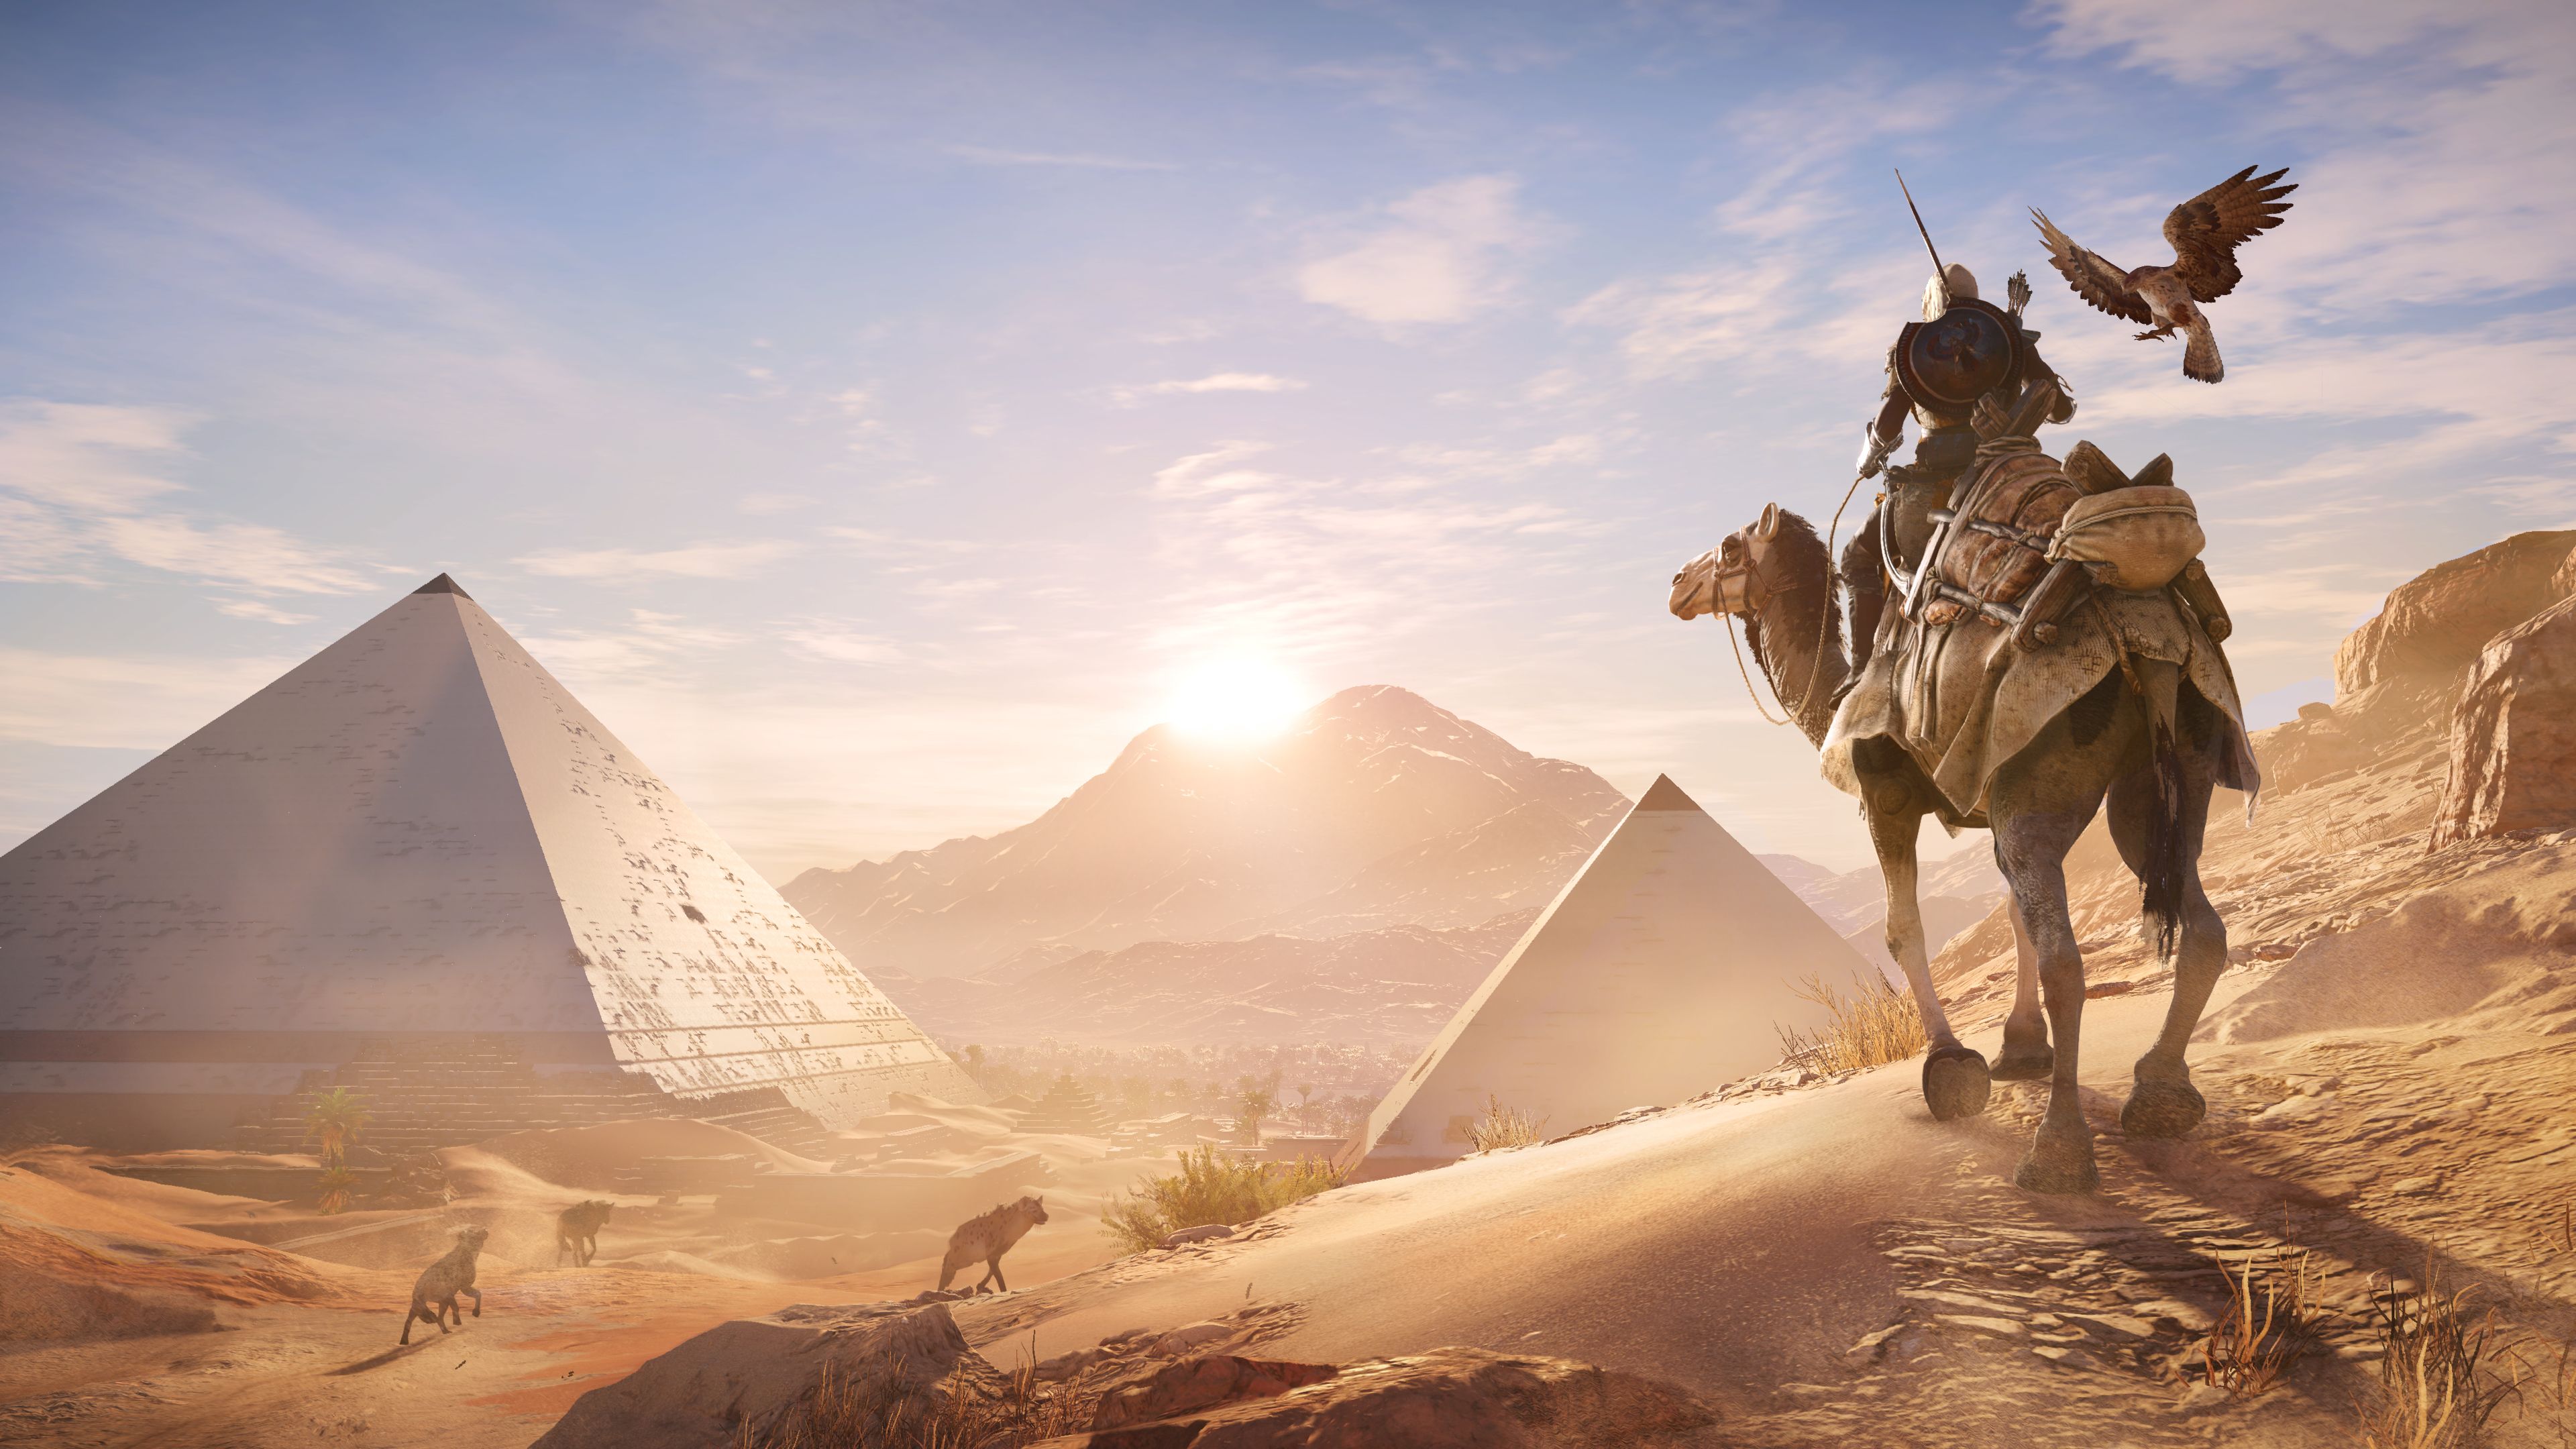 Скачать обои Assassin's Creed: Истоки на телефон бесплатно